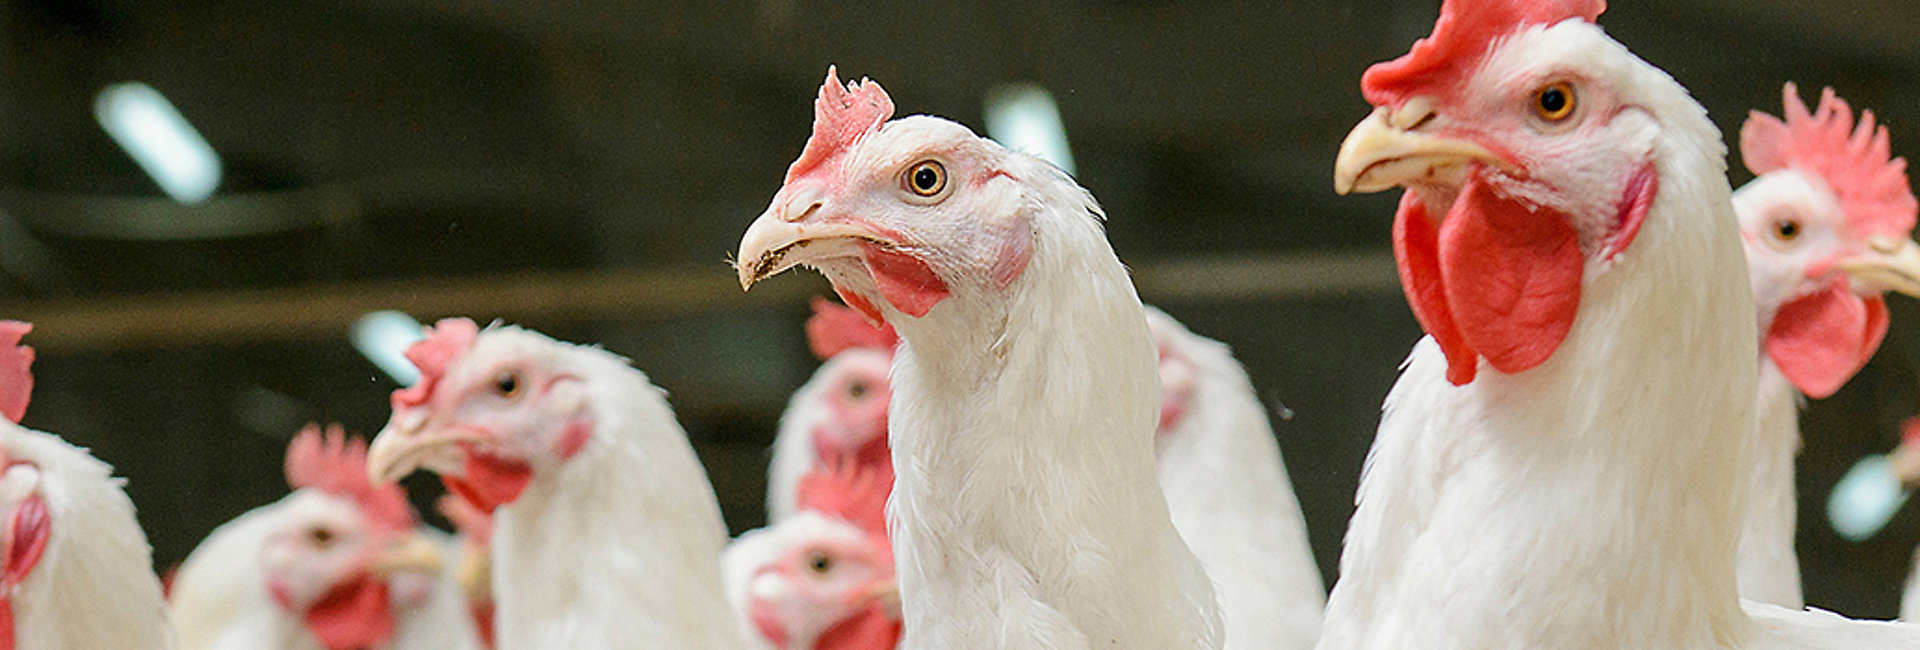 Soluciones de nutrición animal de Kemin para empresas avícolas | Nutrición  y salud animal con Kemin